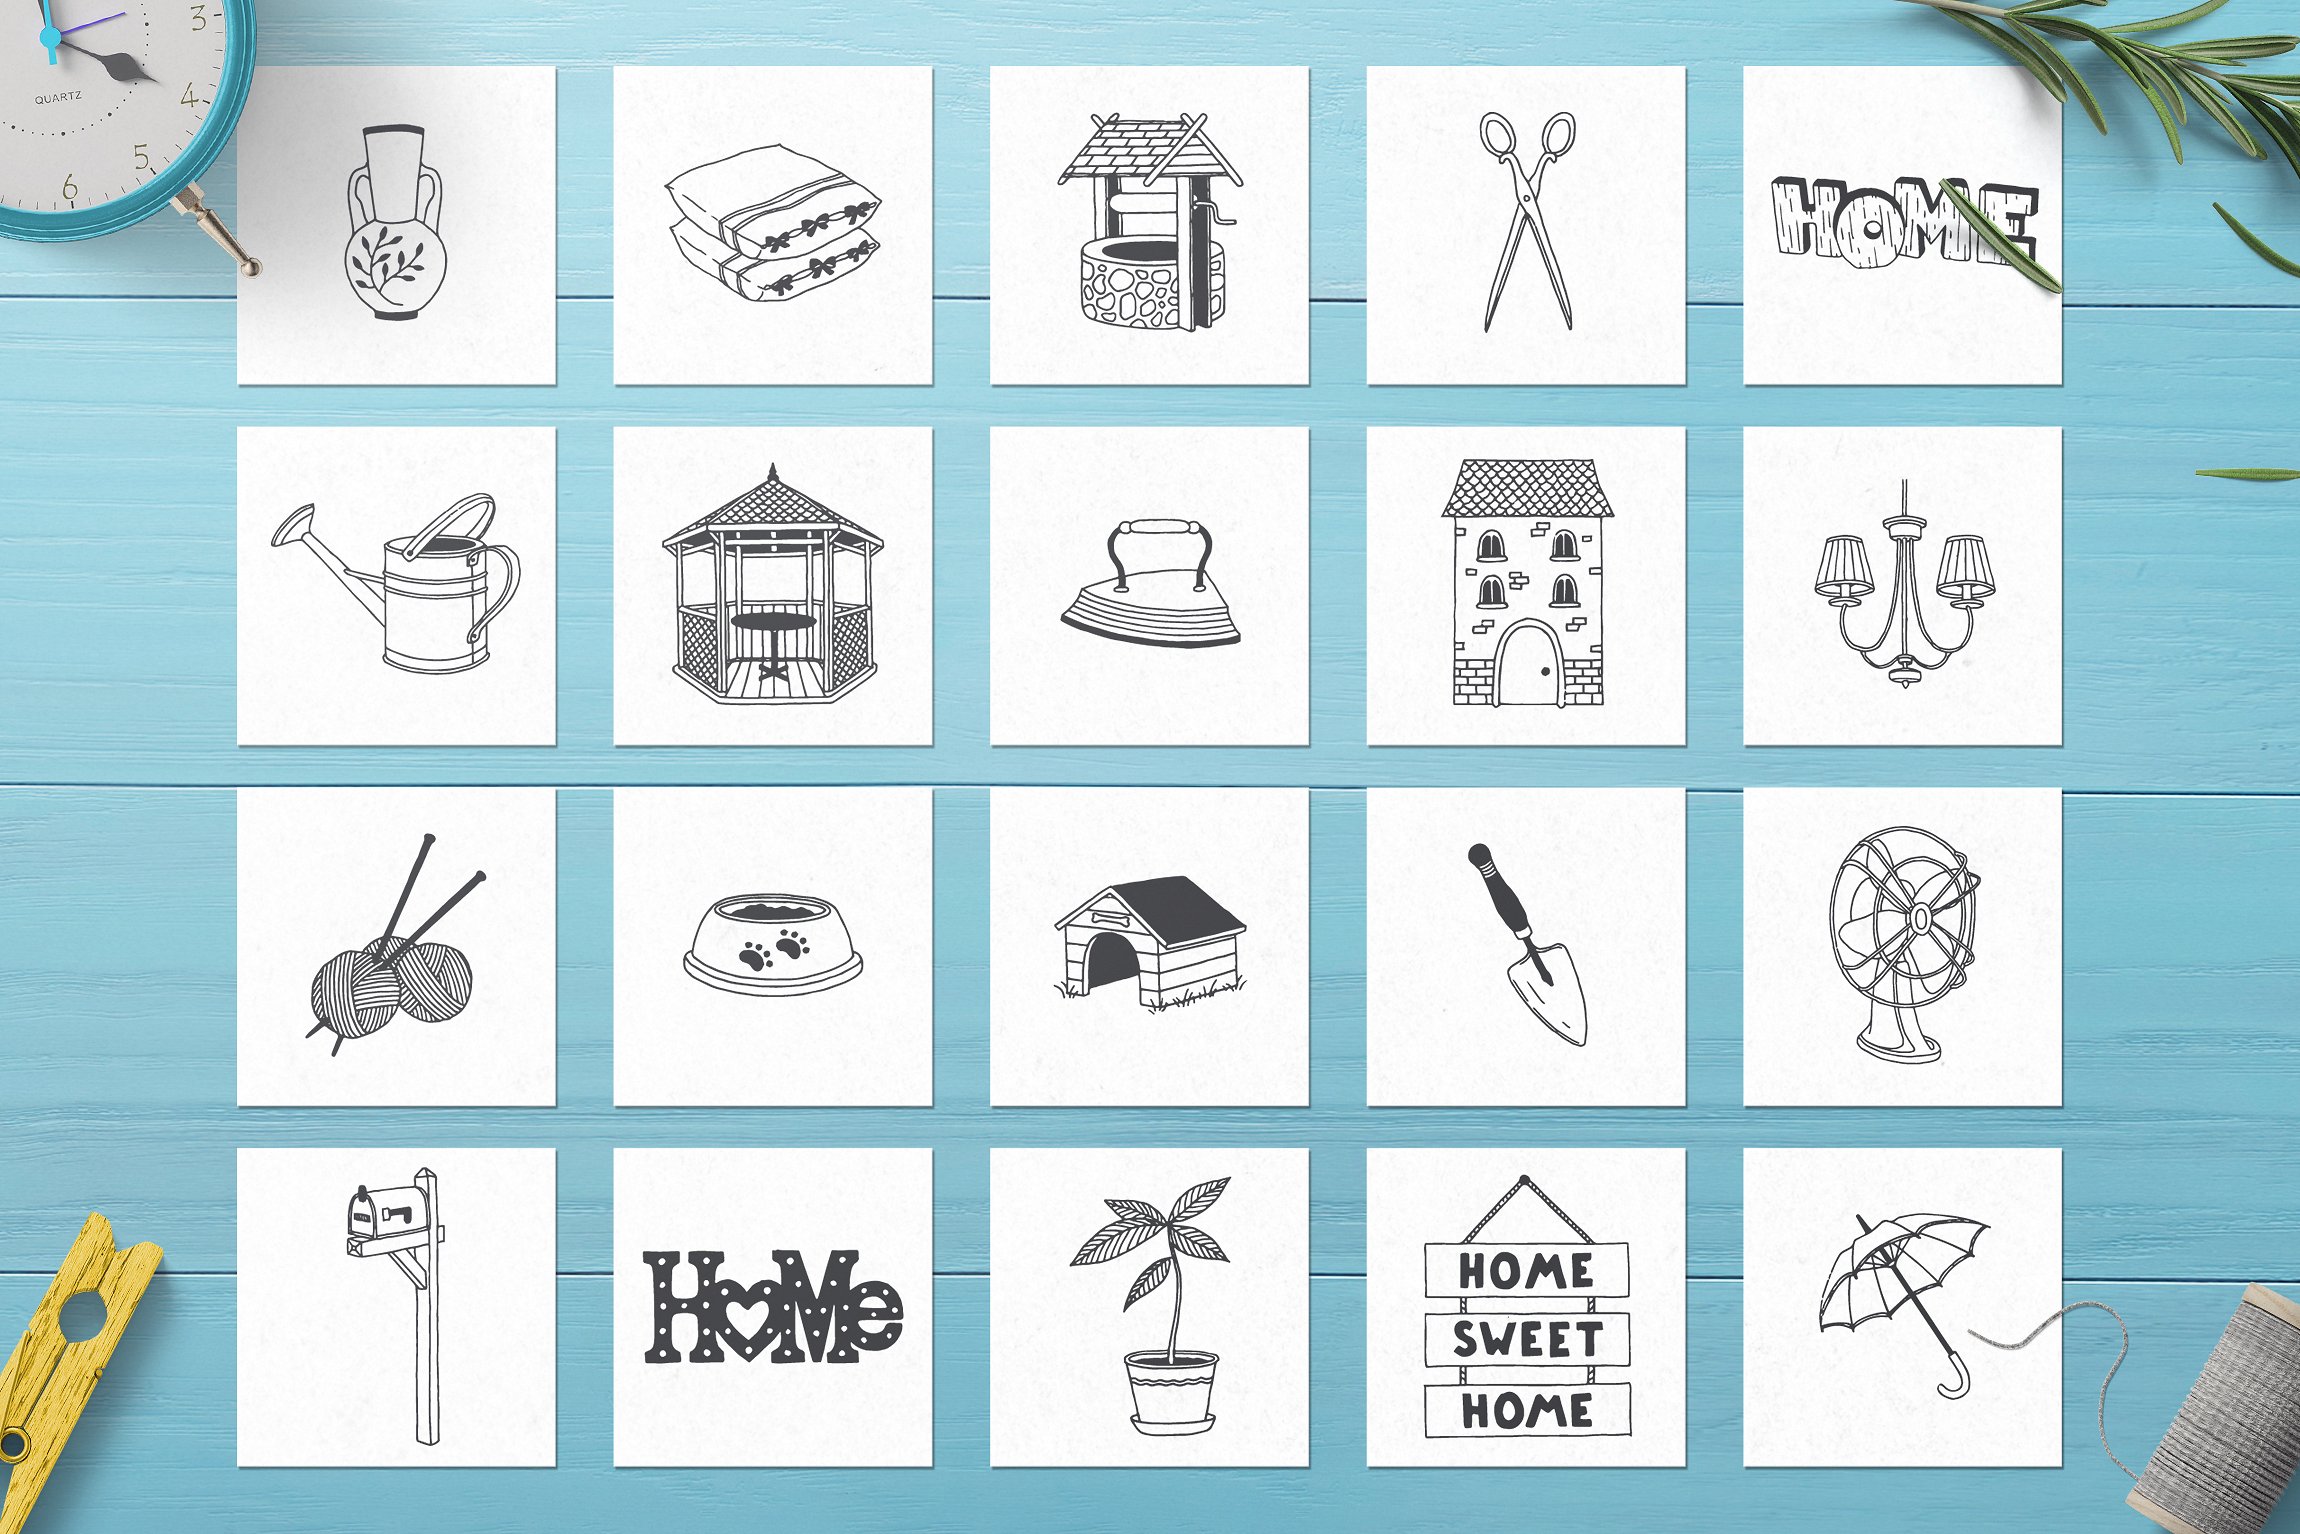 100个手绘家居用品的矢量图形素材下载[psd,ai,eps,png]插图(5)